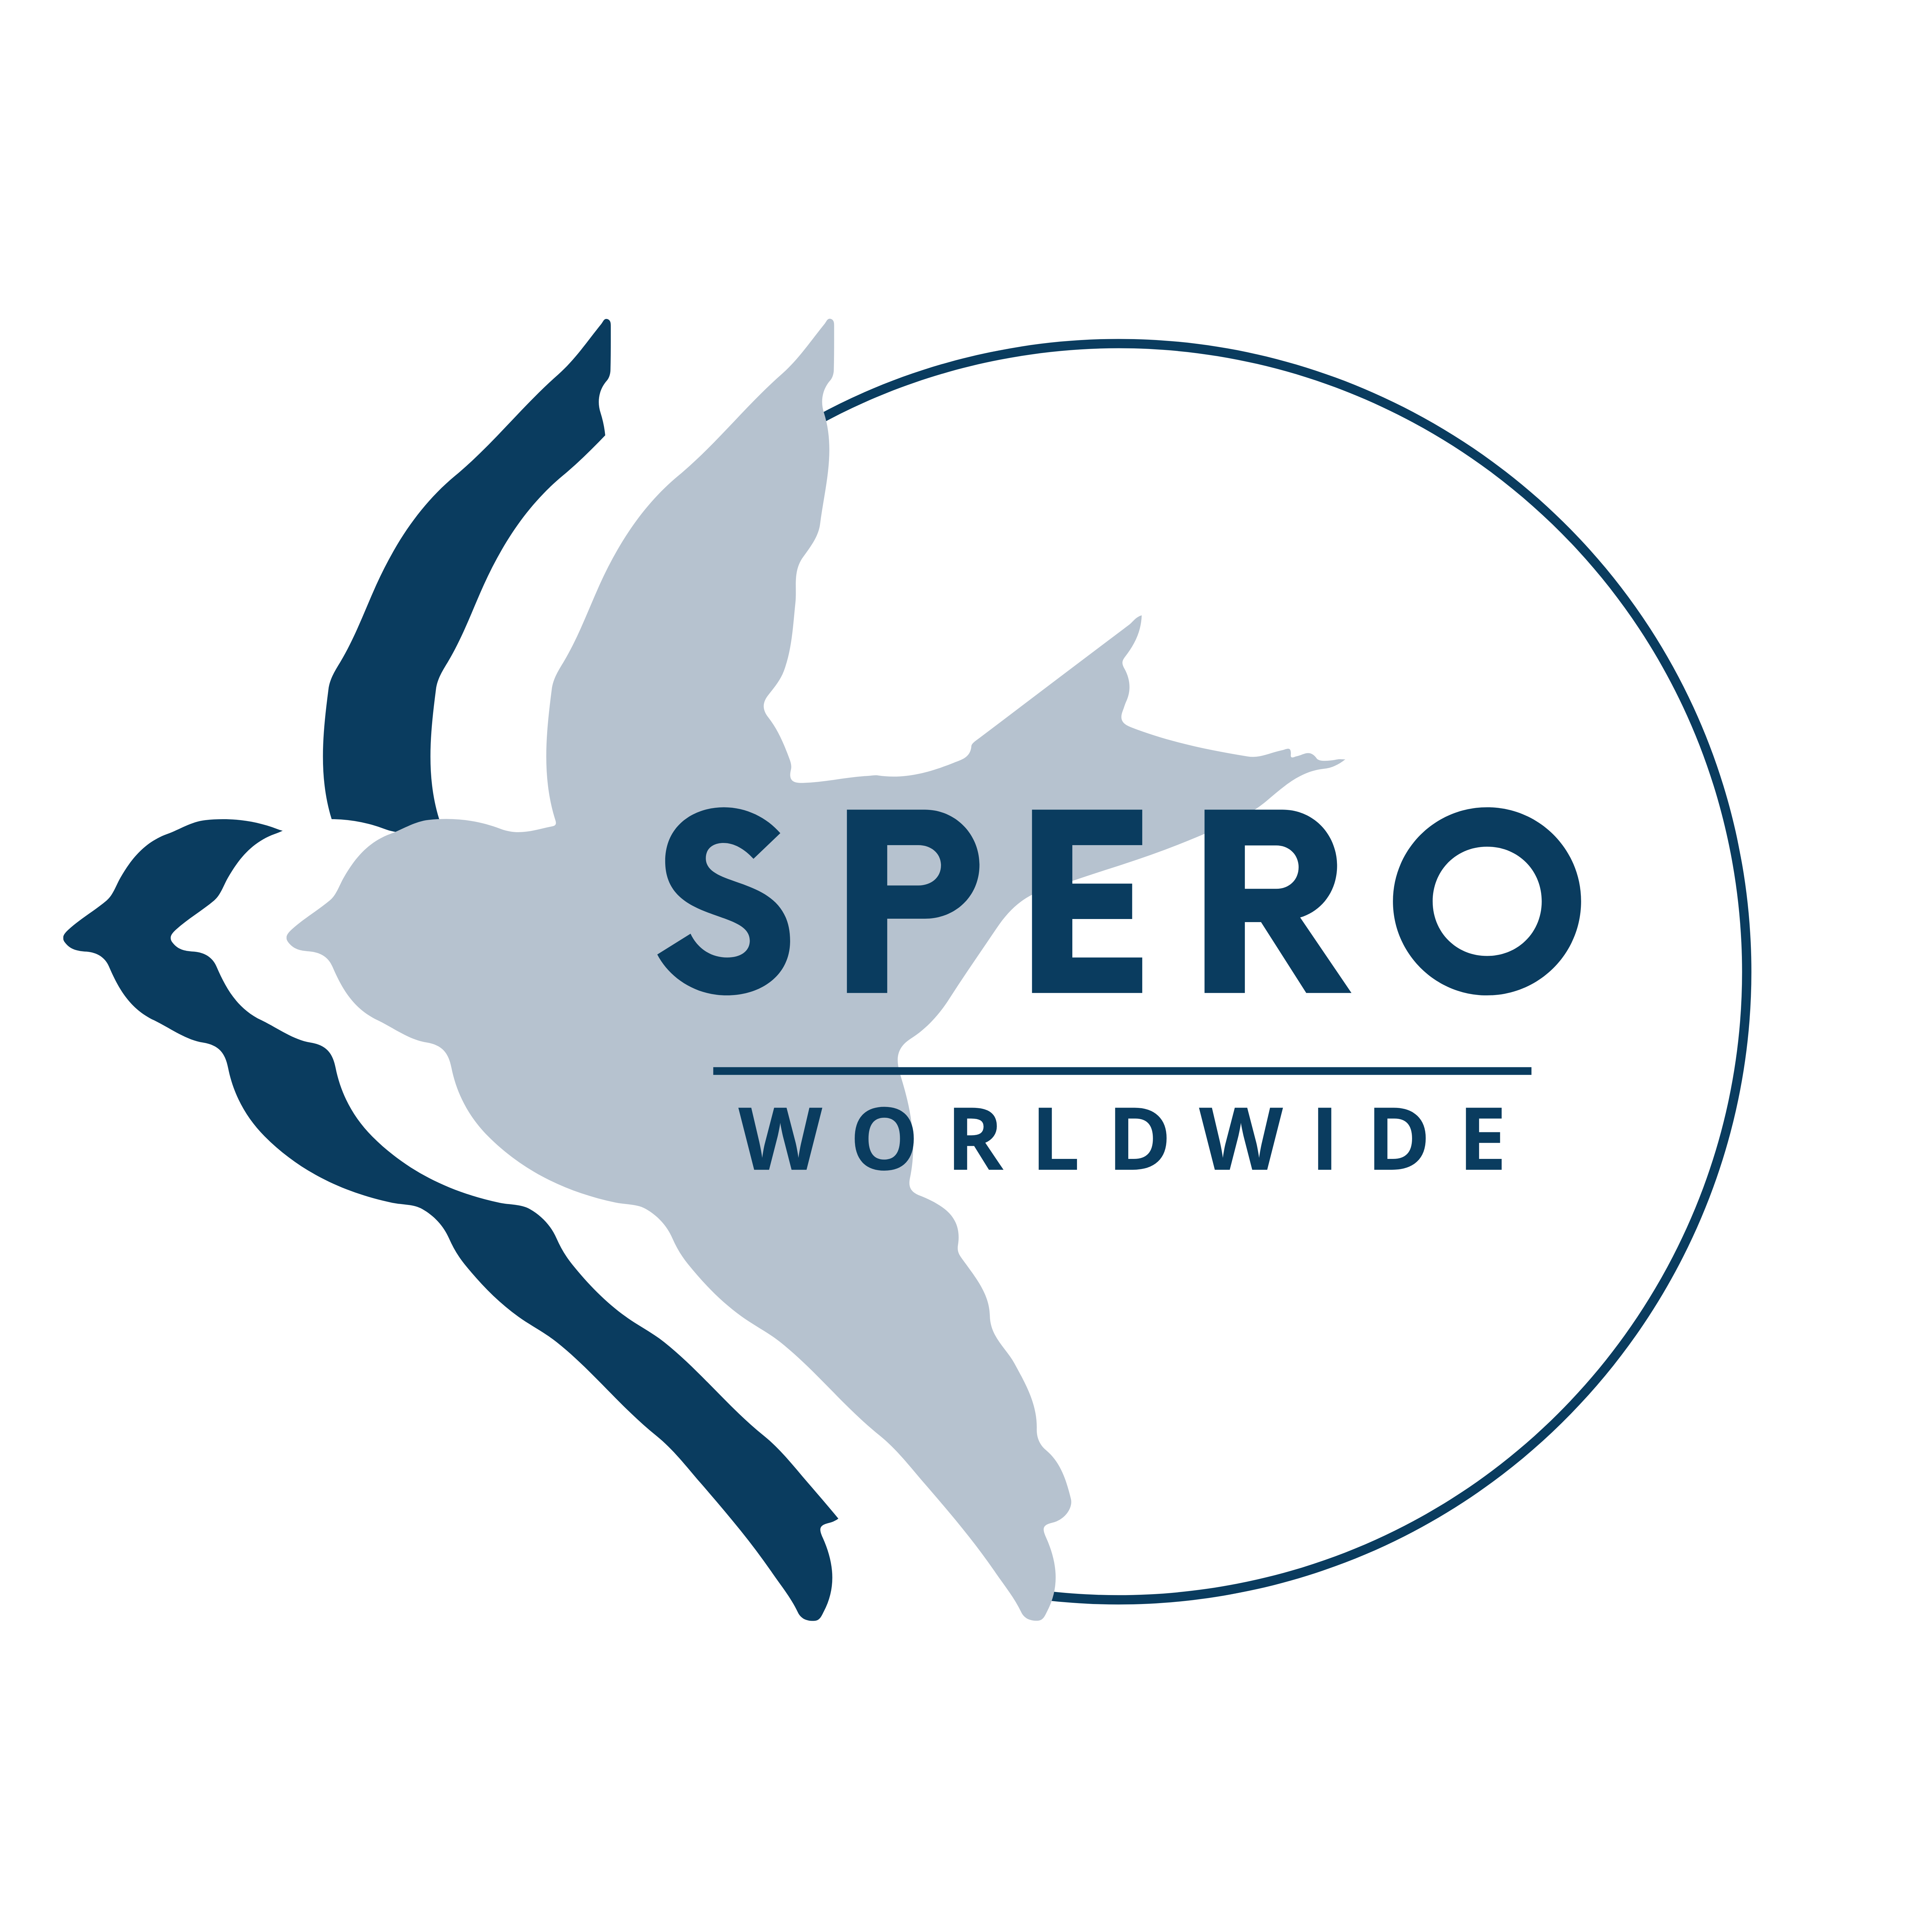 Spero (2000 × 2000 px)